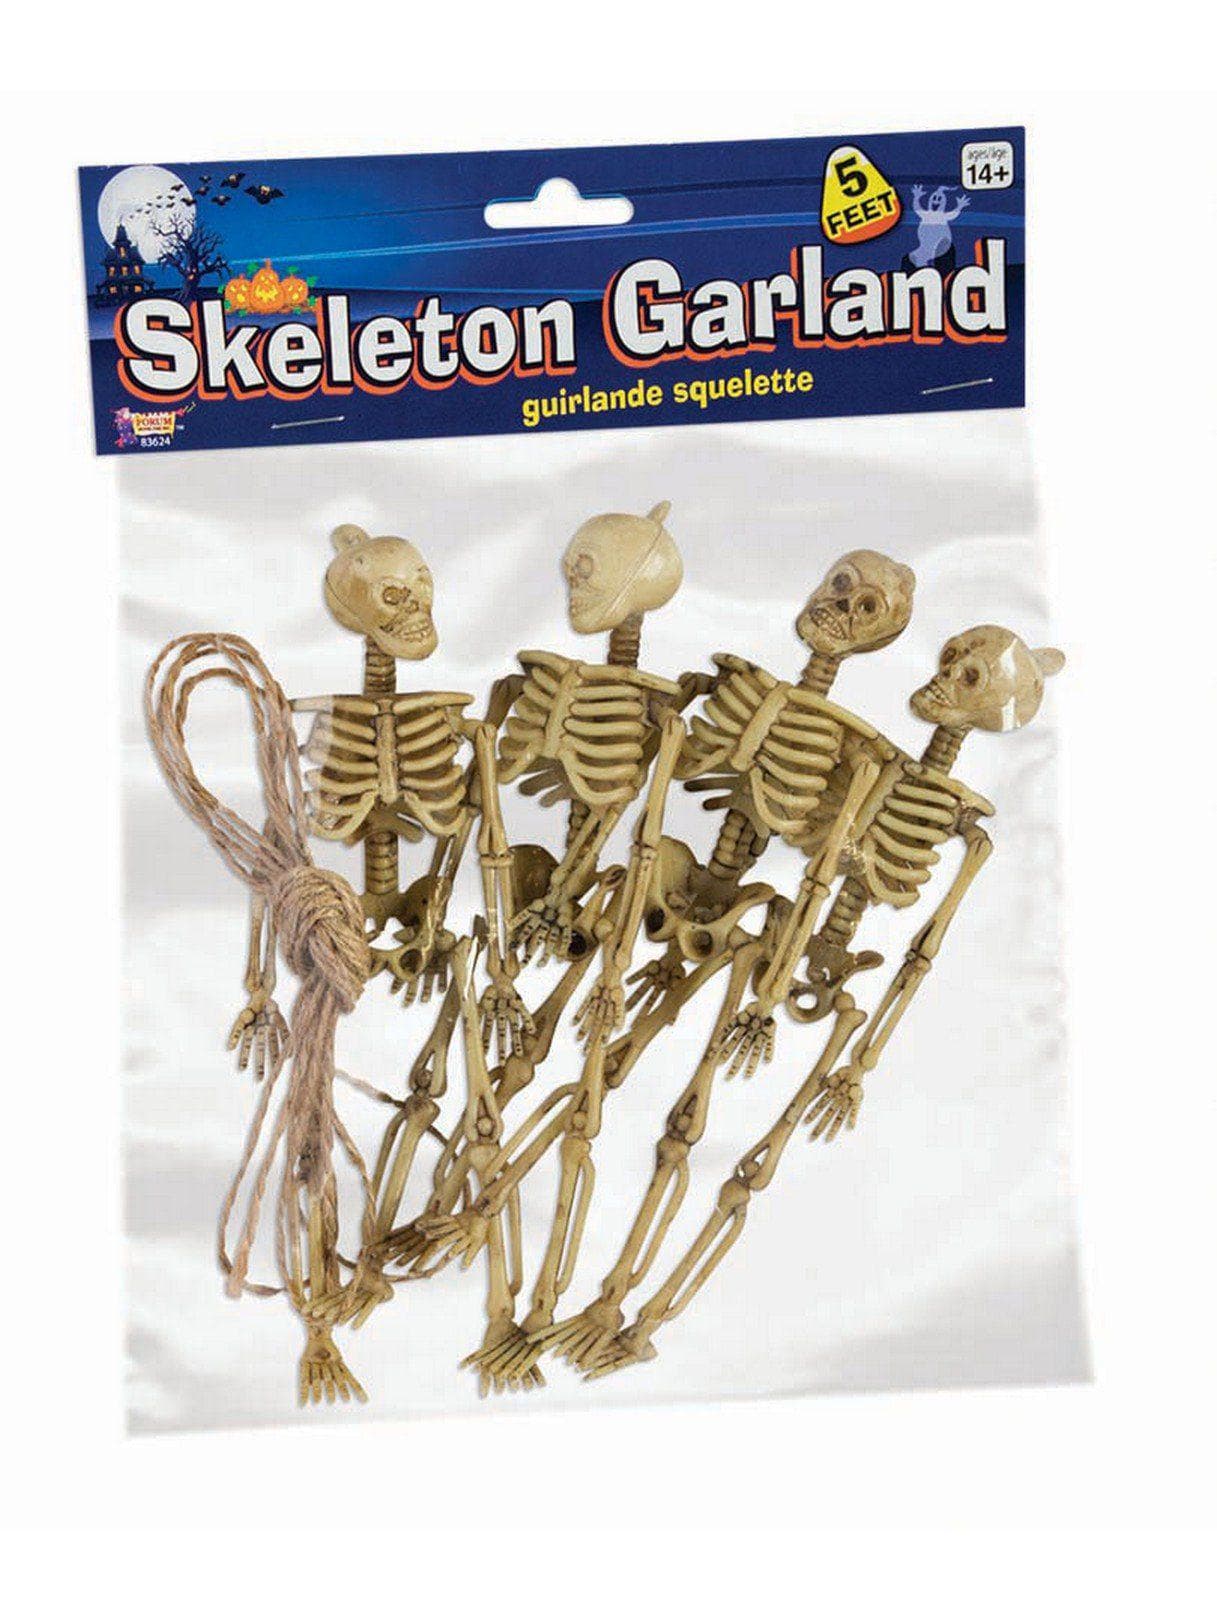 5 Foot Mini Skeleton Garland - costumes.com